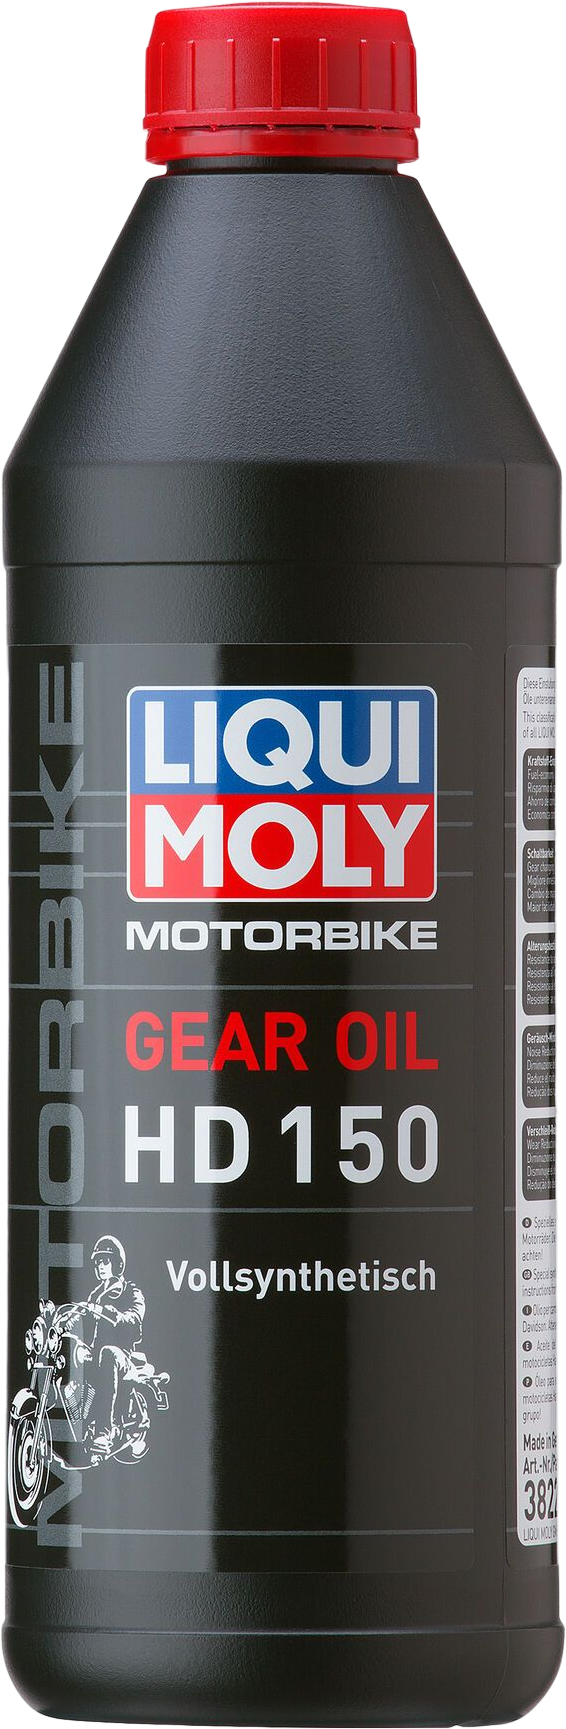 Liqui Moly Motorbike Gear Oil HD 150, 6 x 1 lt detail 2